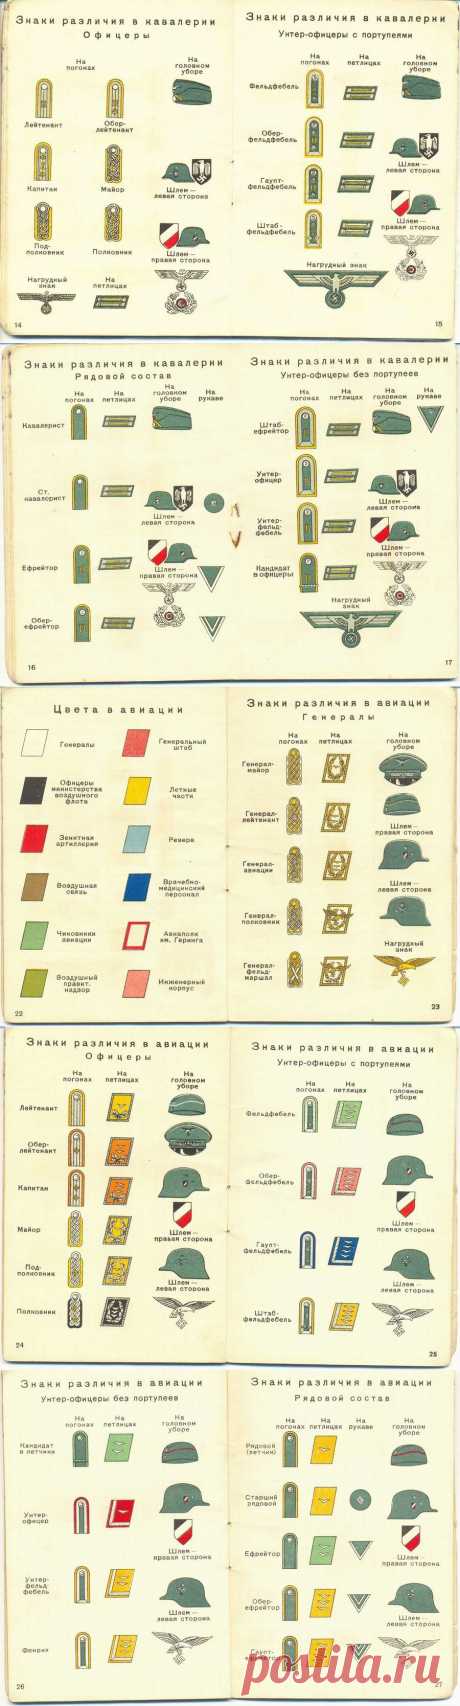 Какие знаки различия были у немецкой армии в 1941 году | Разно Всяко